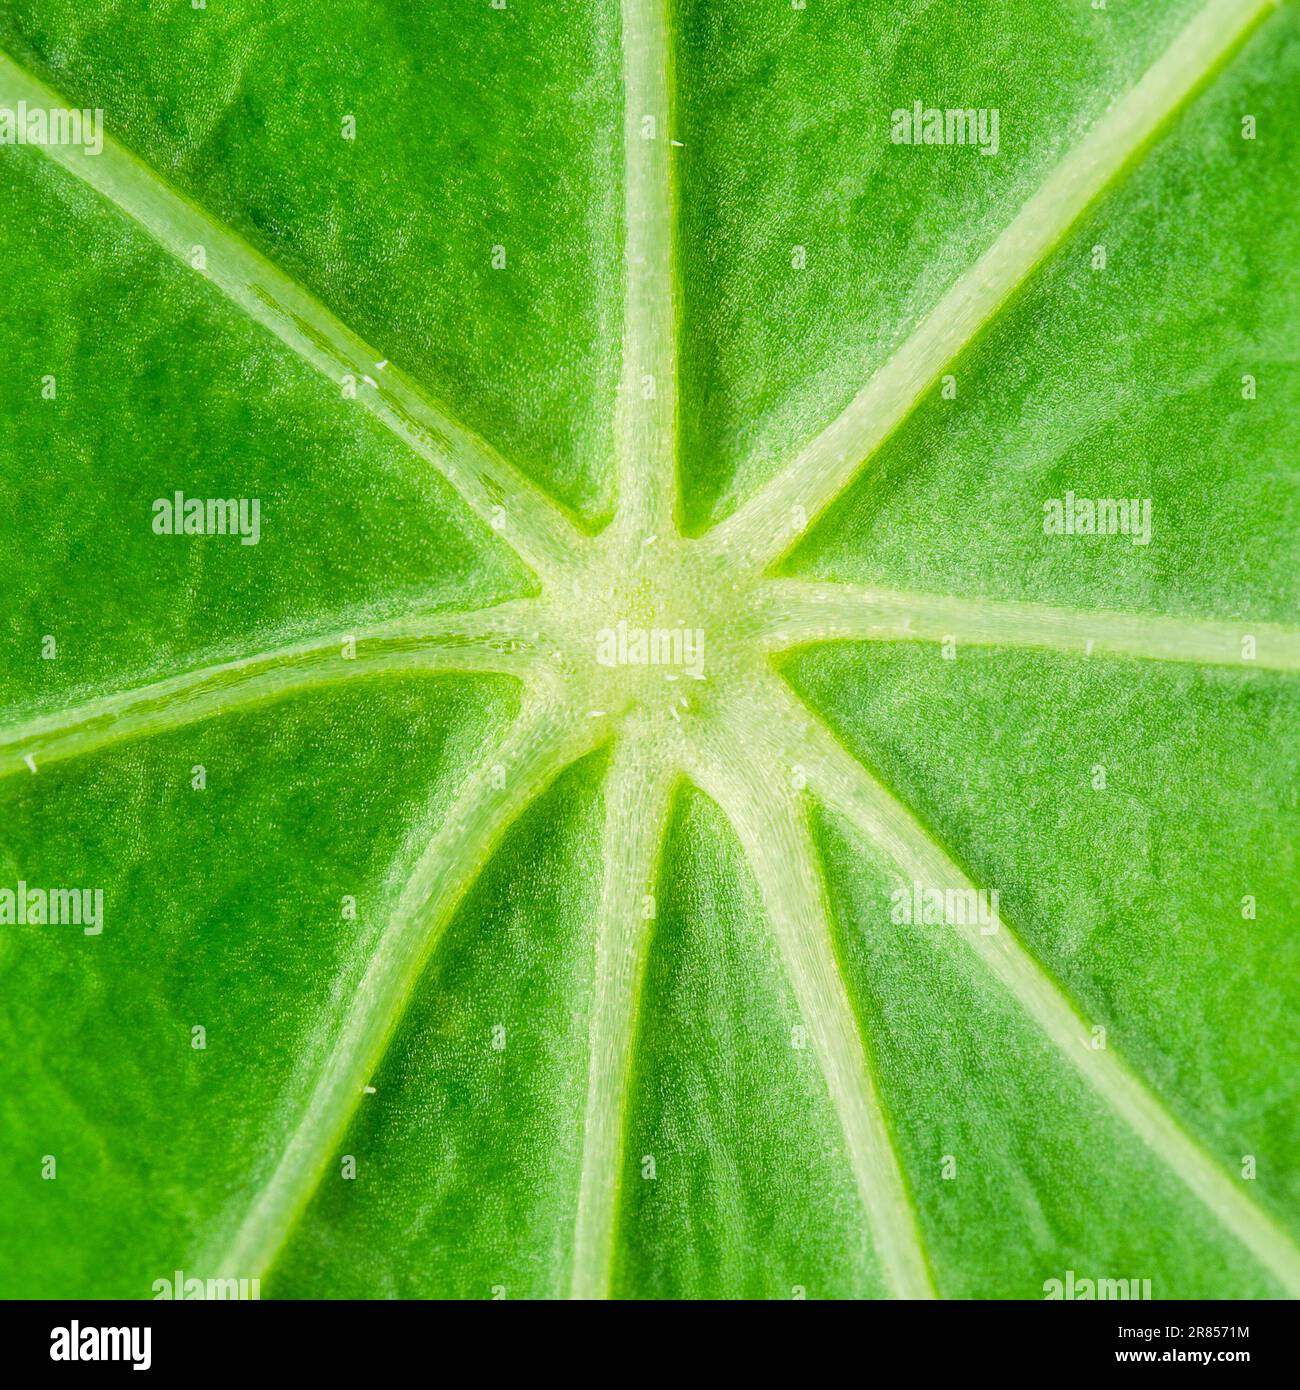 Centre de la feuille de nasturtium de jardin de couleur vert chlorophylle intense, avec nervures épaisses en forme d'étoile, et cellules et pores foliaires. Banque D'Images